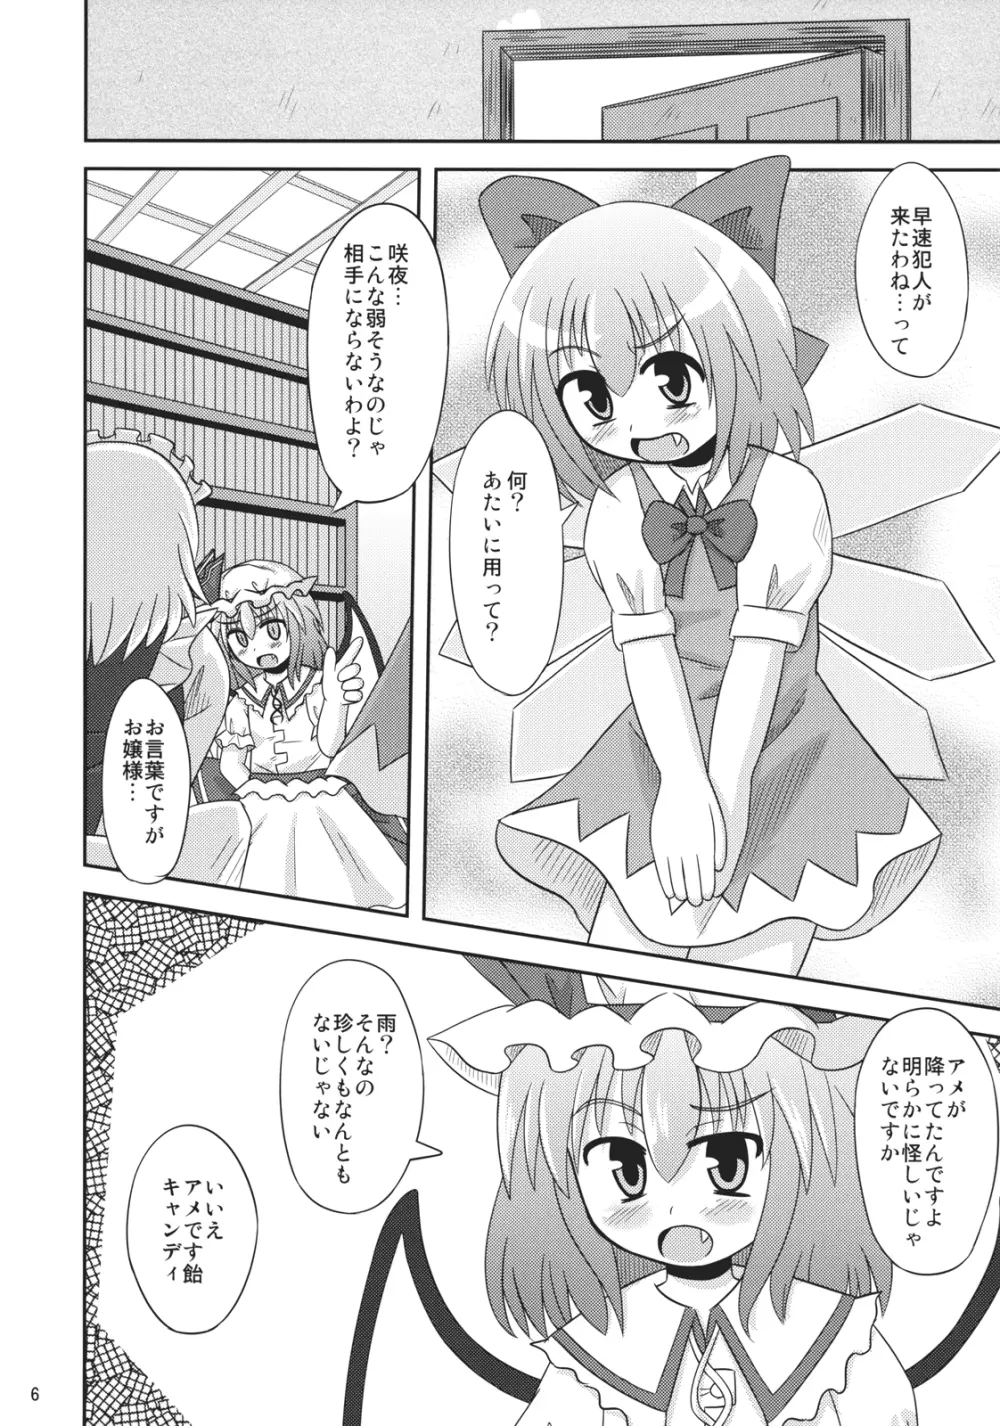 緋想天レミリアストーリーSTAGE9的な本 5ページ